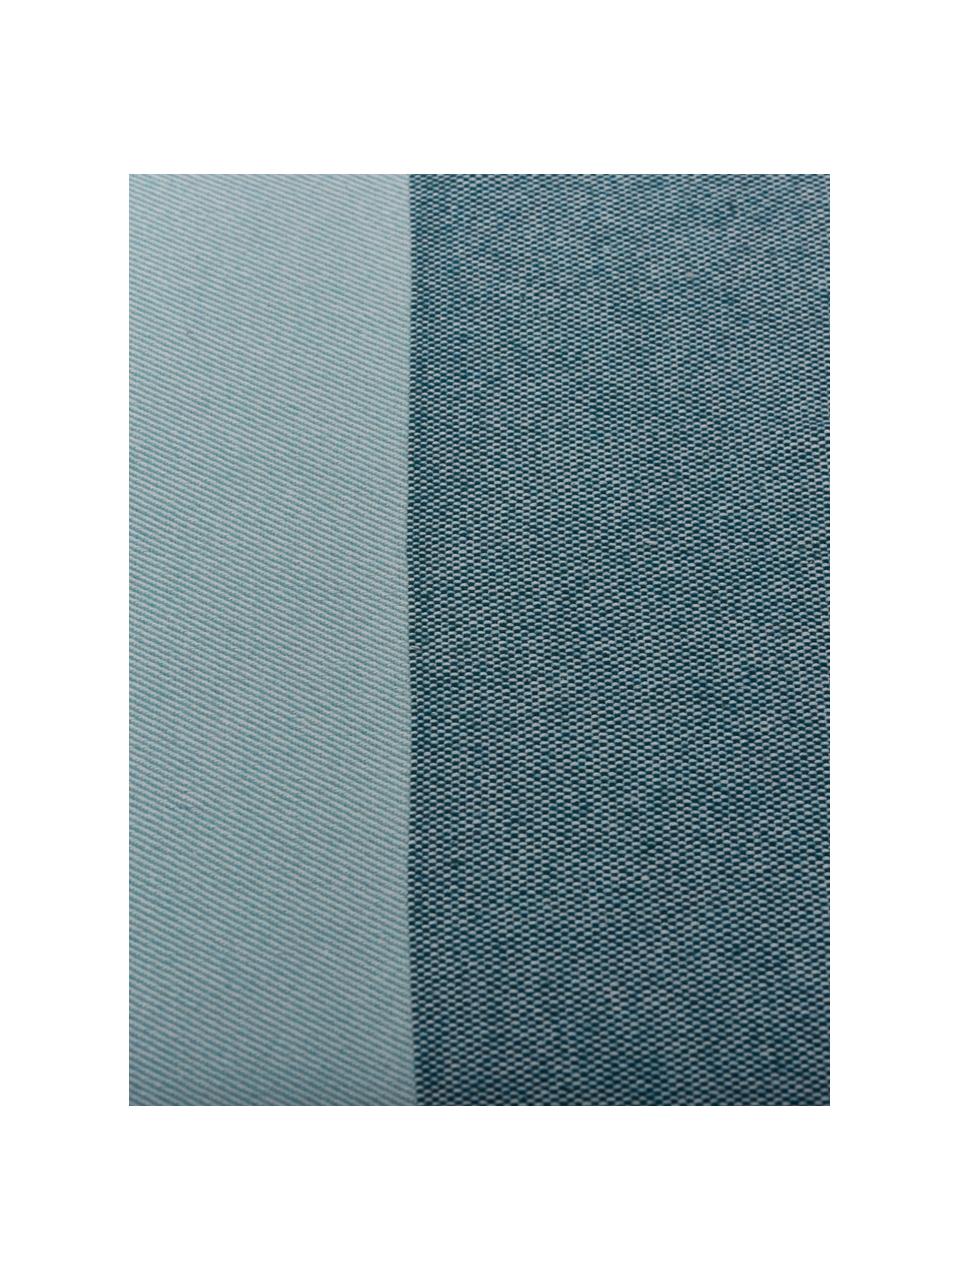 Plaid Stripes in Blautönen mit Fransenabschluss, 50% Baumwolle, 50% Polyacryl, Blautöne, 150 x 200 cm